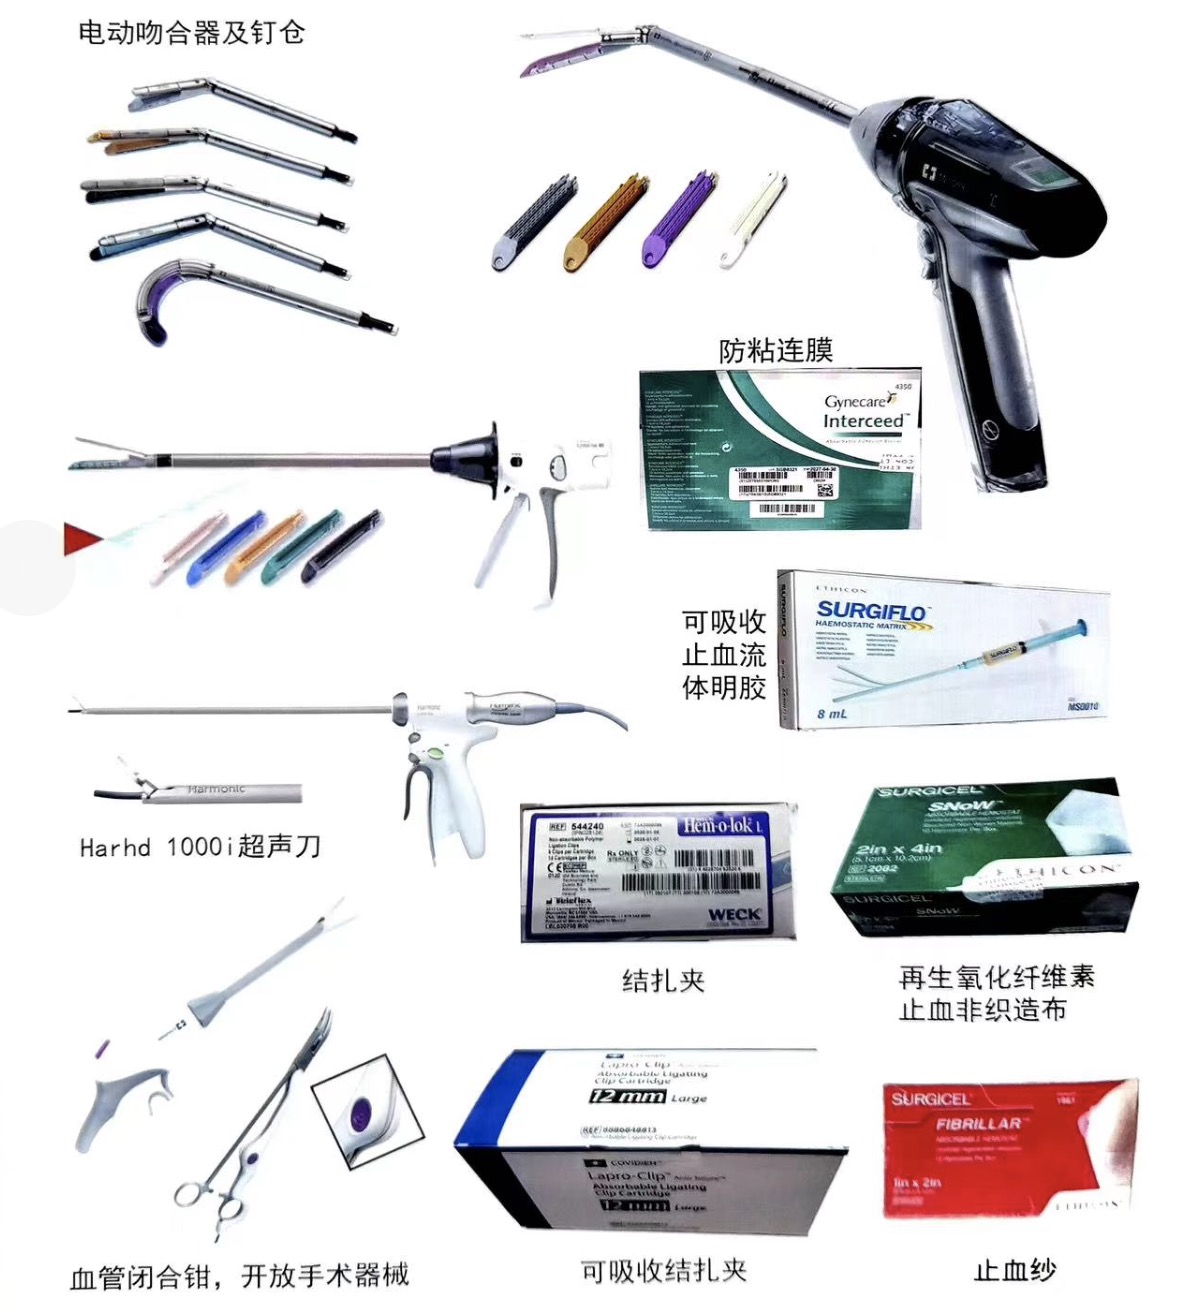 швы; степлеры;электроды и различные виды медицинских инструментов 